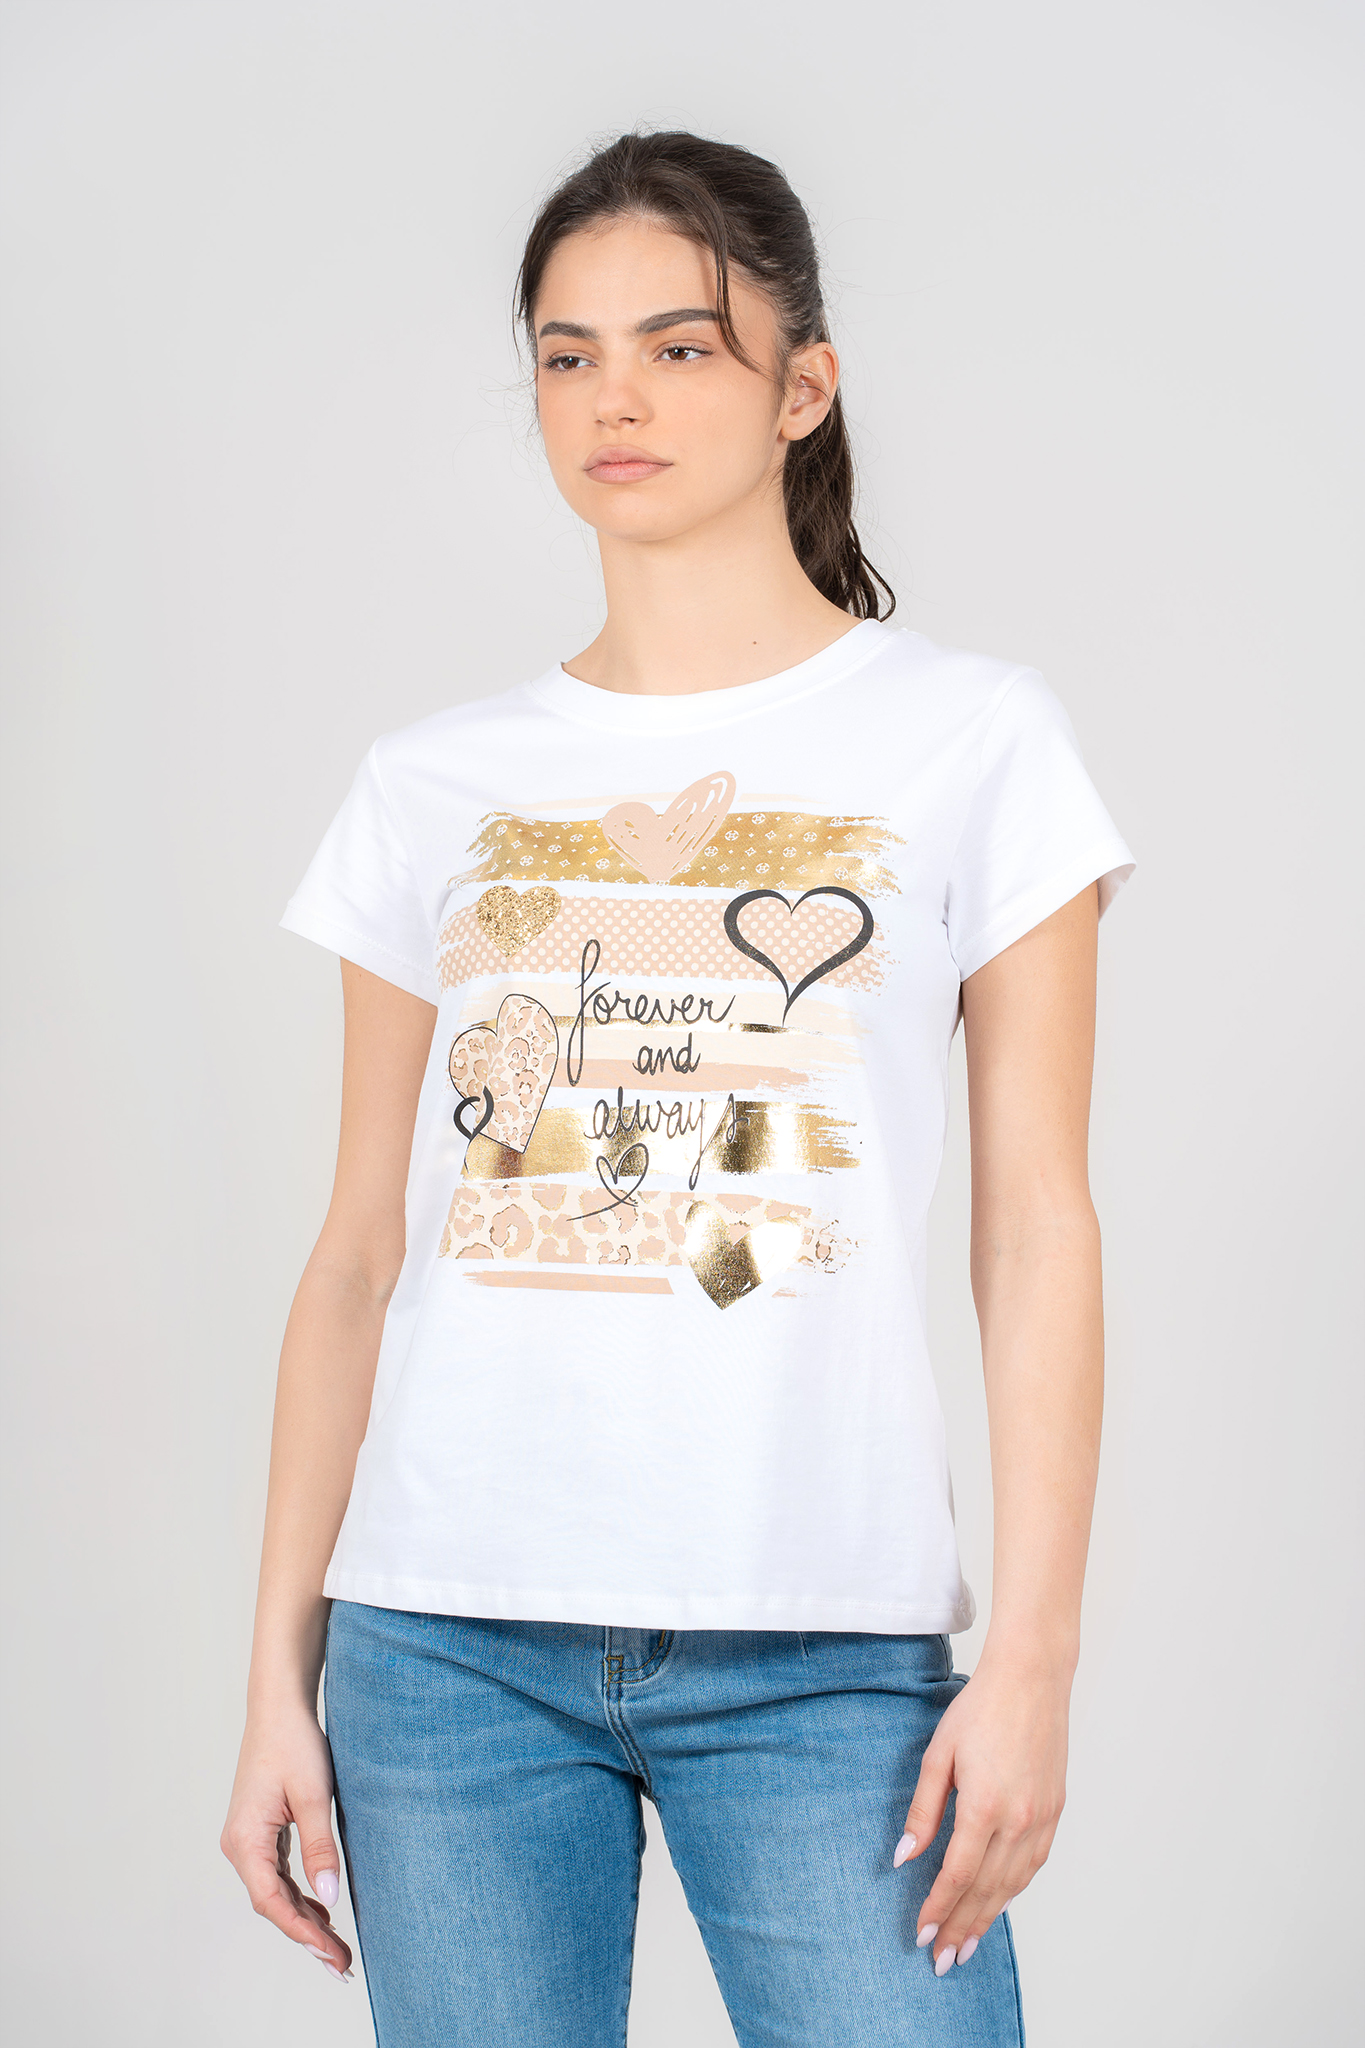 Дамска тениска от памук в бяло със златна щампа, сърца и надпис